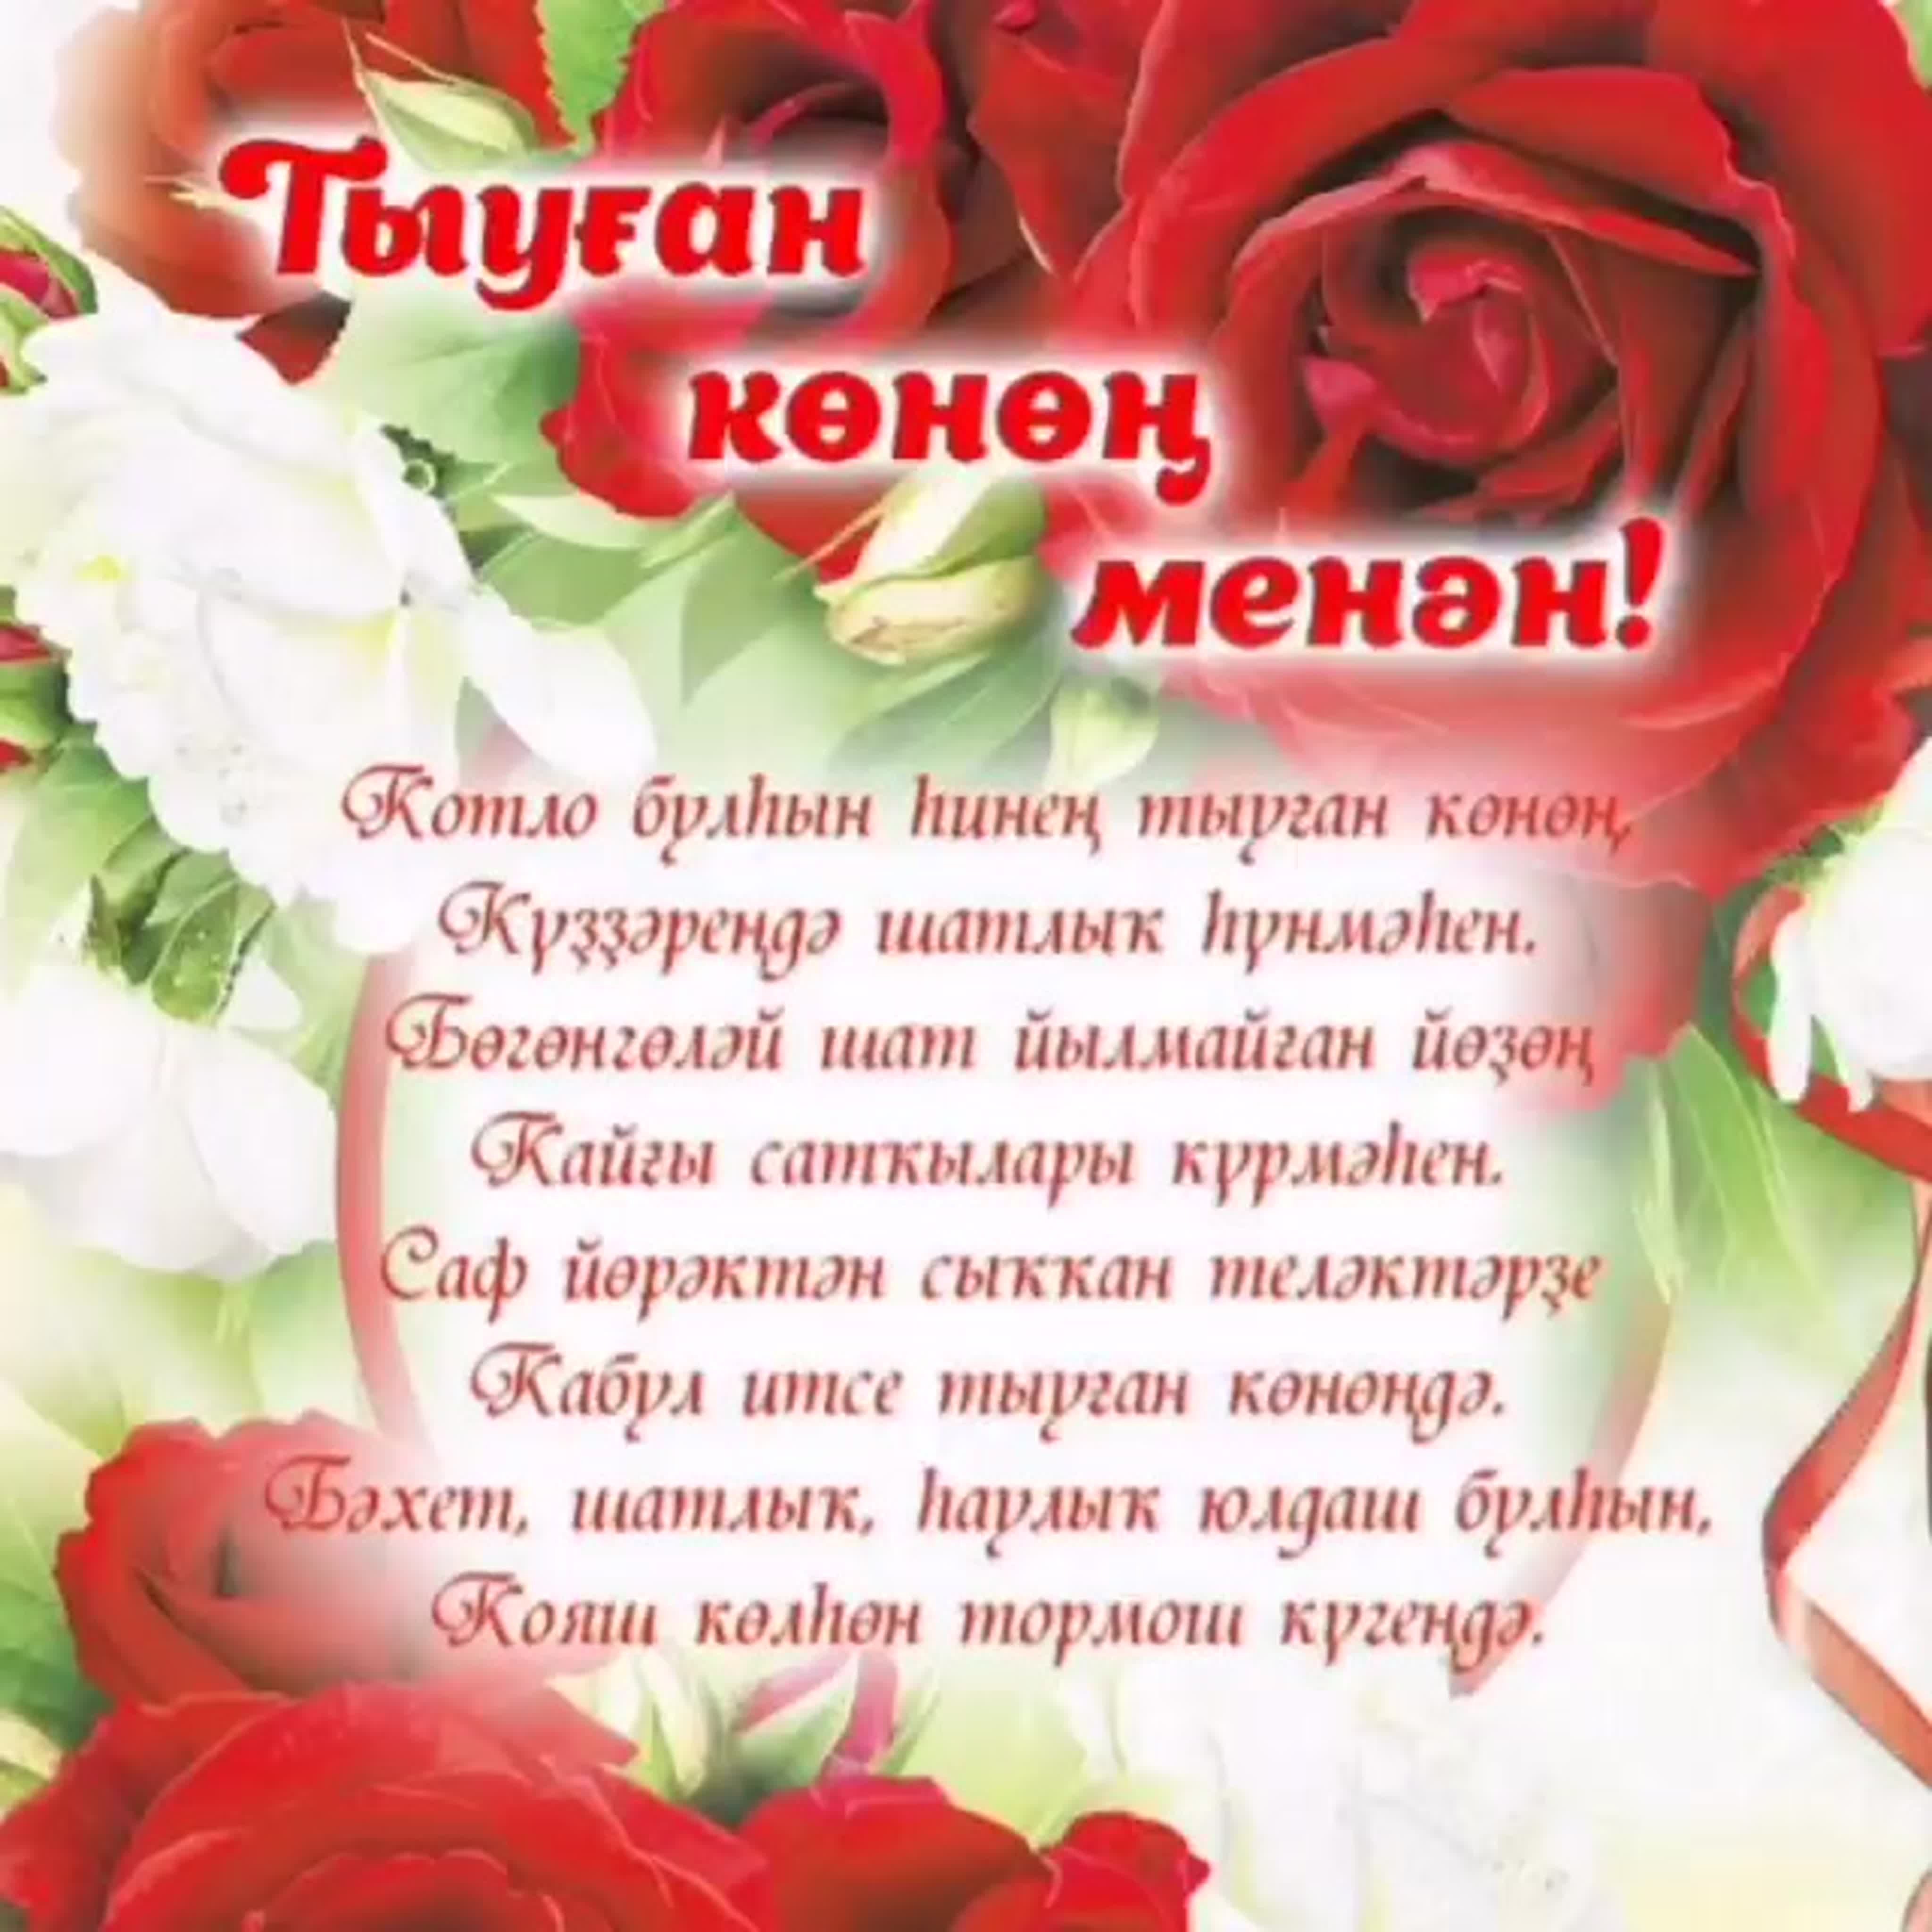 Поздравления брату с днем на татарском. Поздравления на башкирском языке. Поздравления с днём рождения на башкирском языке. Поздравление на татарском языке. Поздравления с днём рождения женщине на башкирском языке.